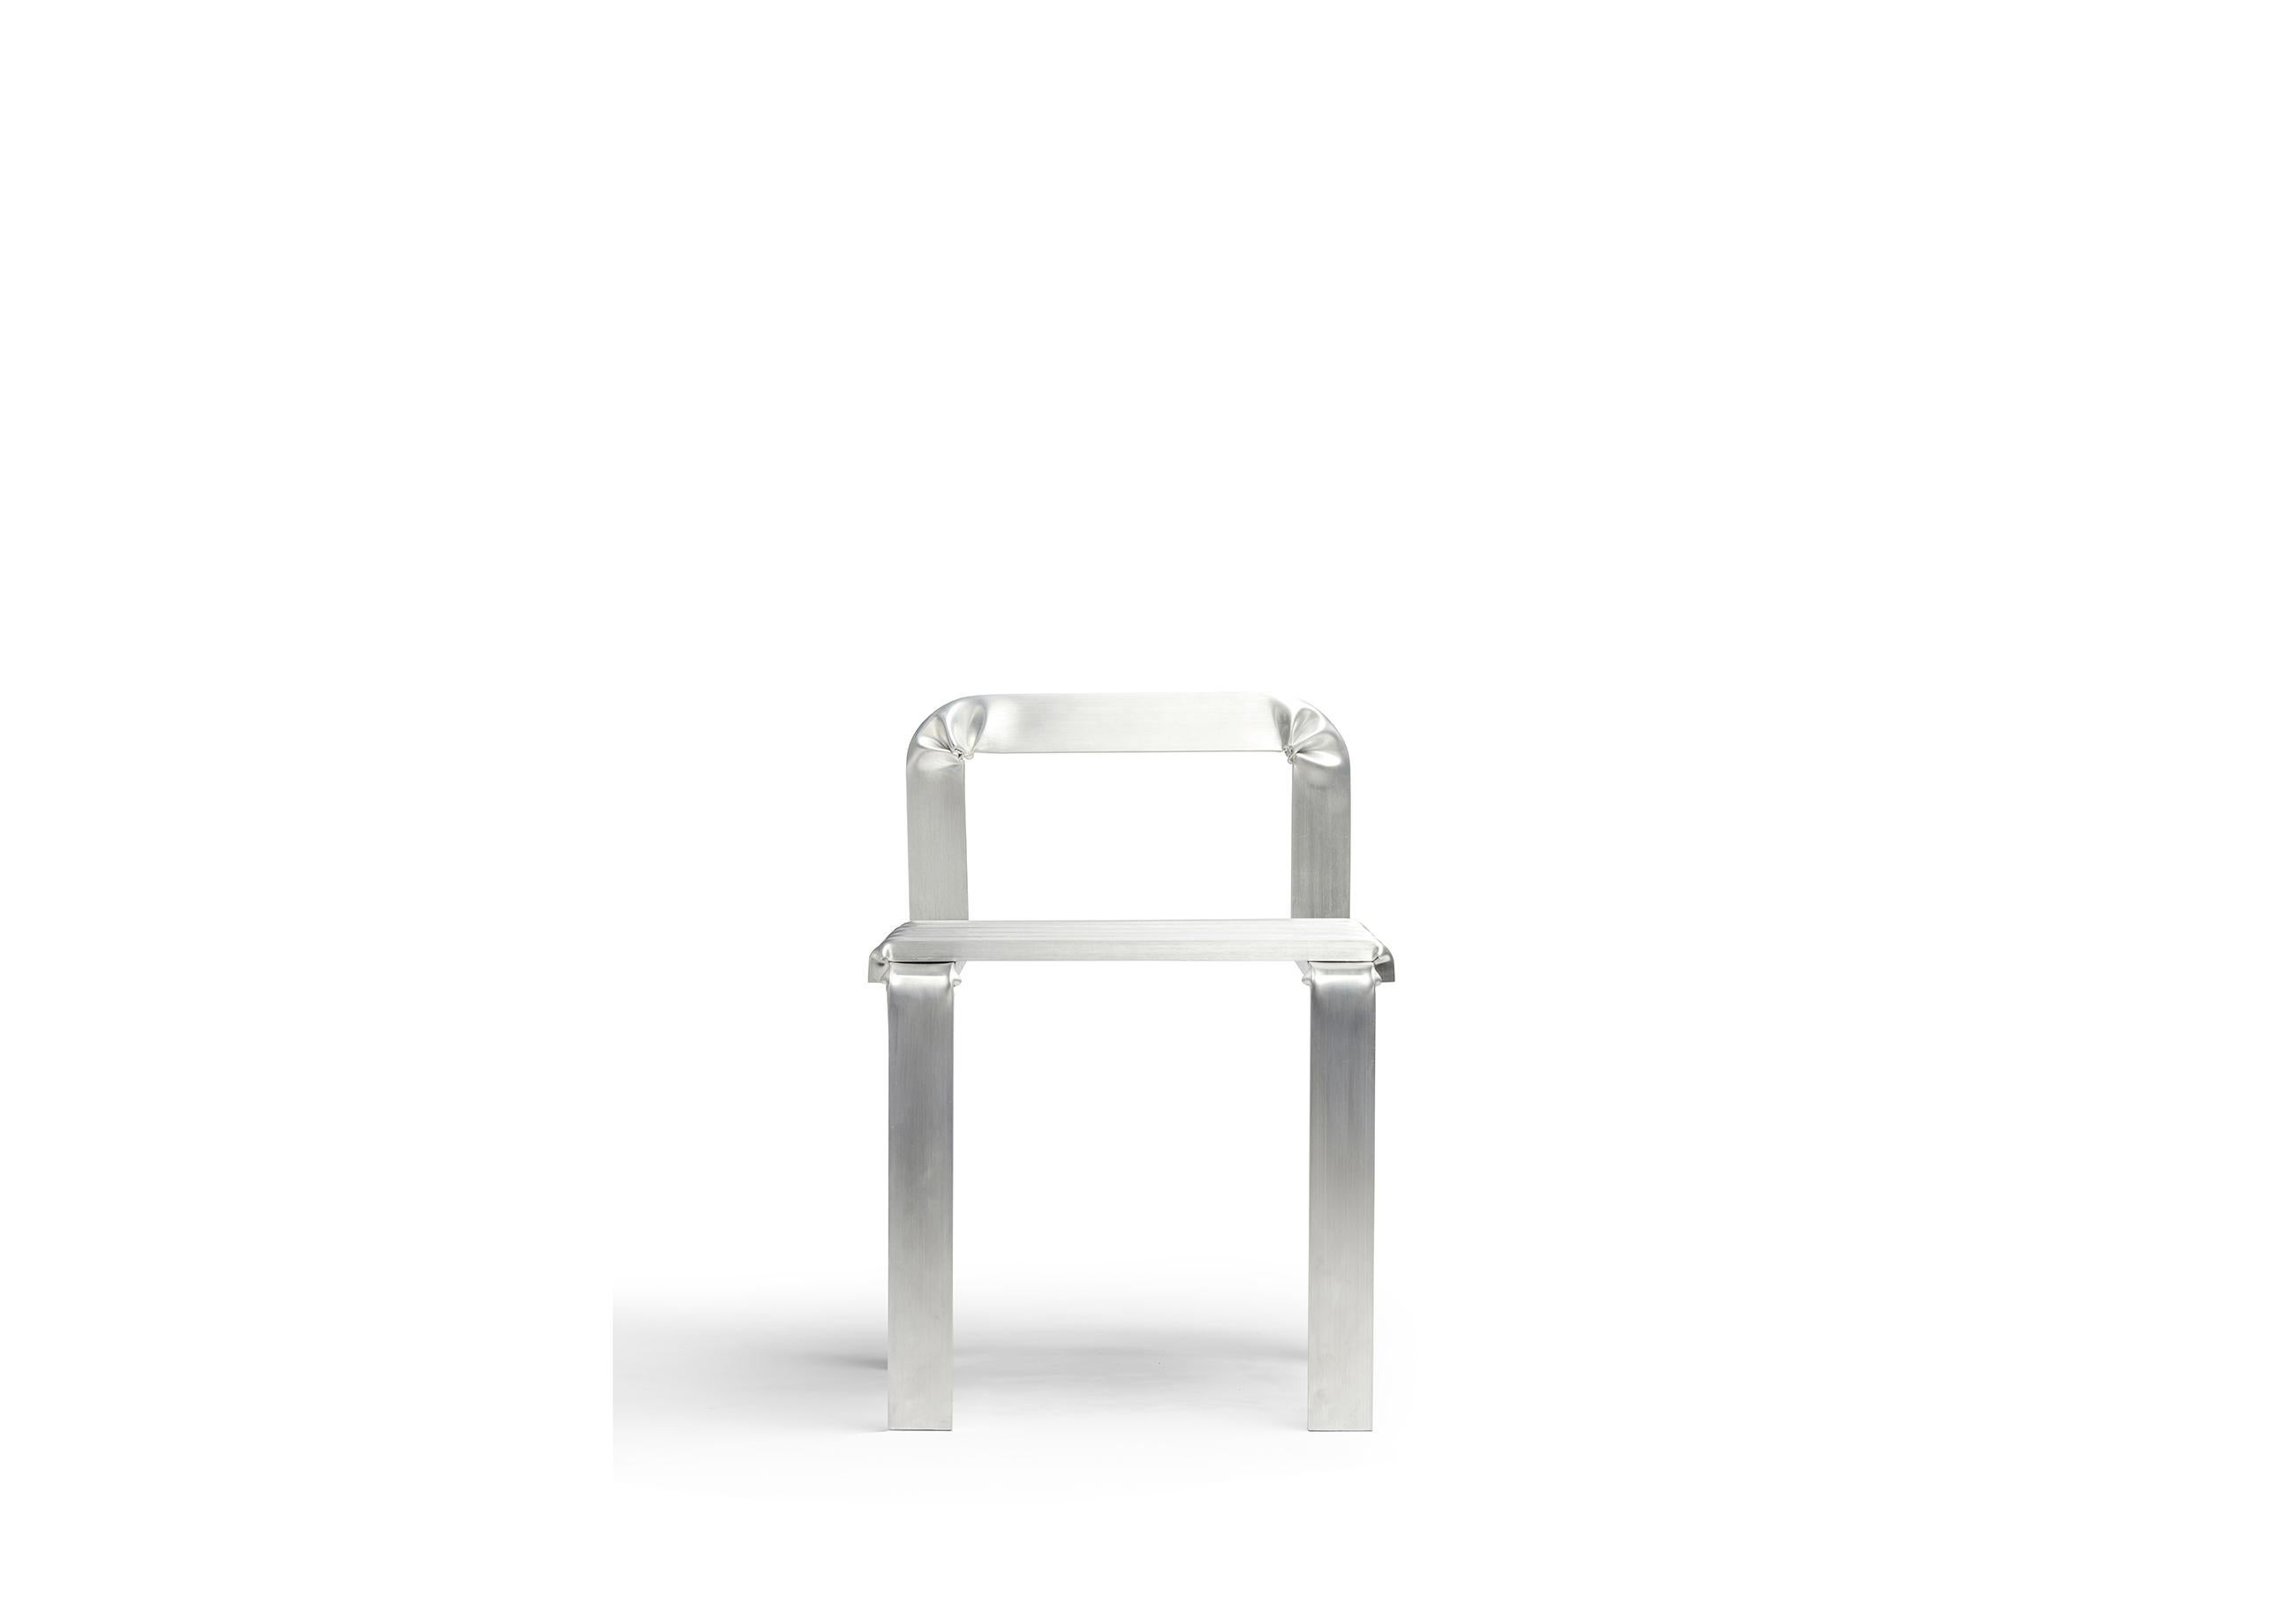 Cette large chaise à dossier bas est conçue comme un parcours de tubes en aluminium pliés. Les coins sont déformés manuellement afin de démontrer la plasticité du matériau. 

Le concept de la chaise Unstressed est issu de l'exploration de la